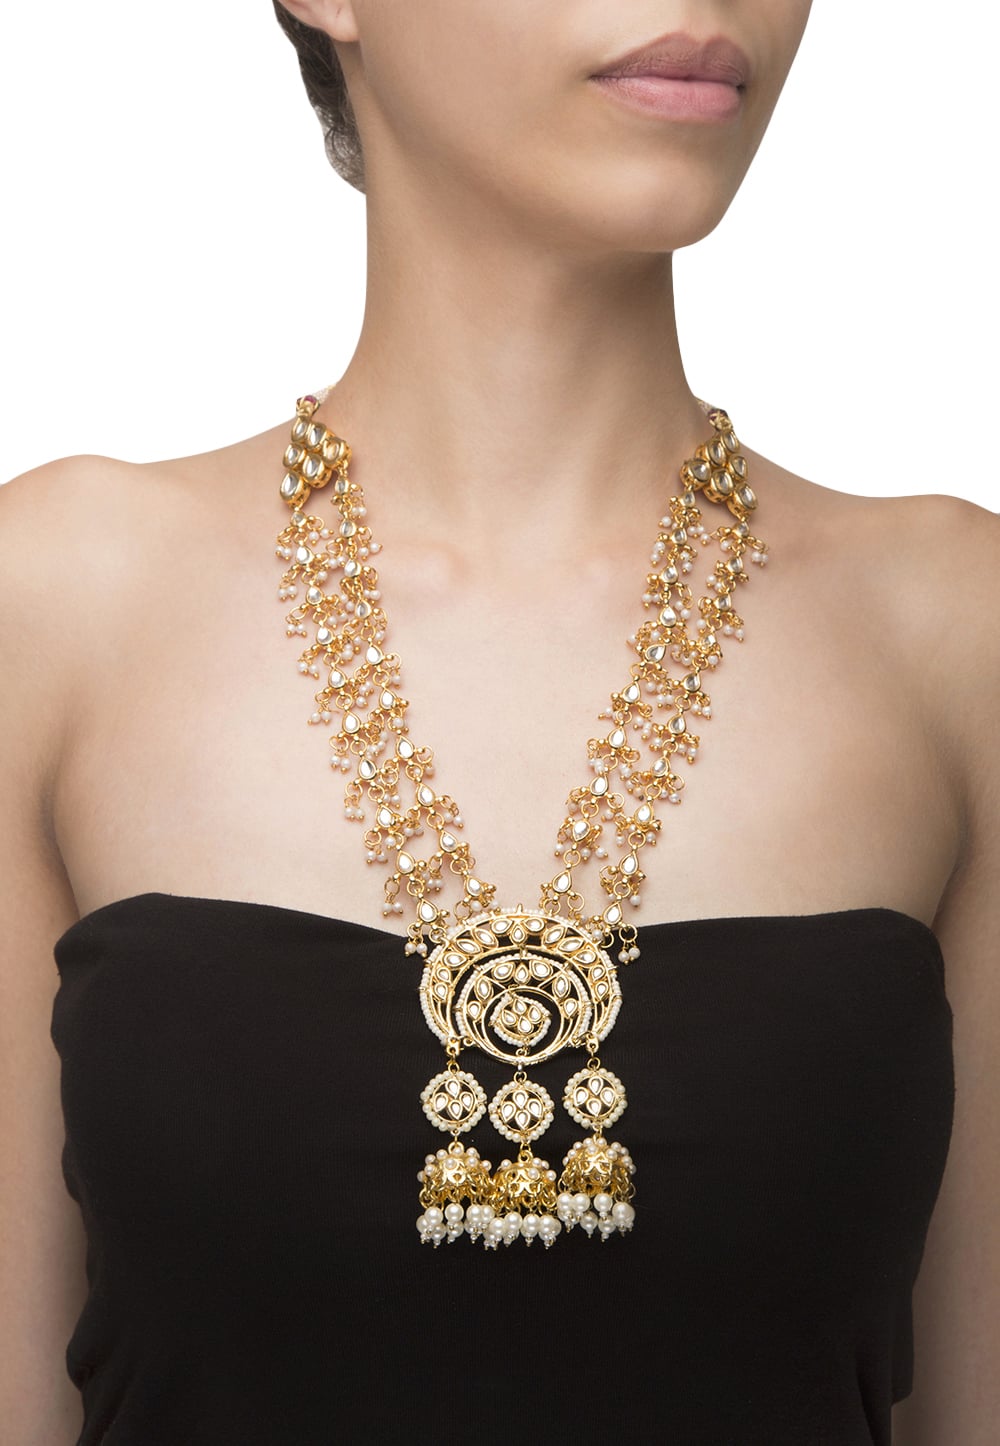 22k gold finish kundan chandbali motif necklace available only at IBFW